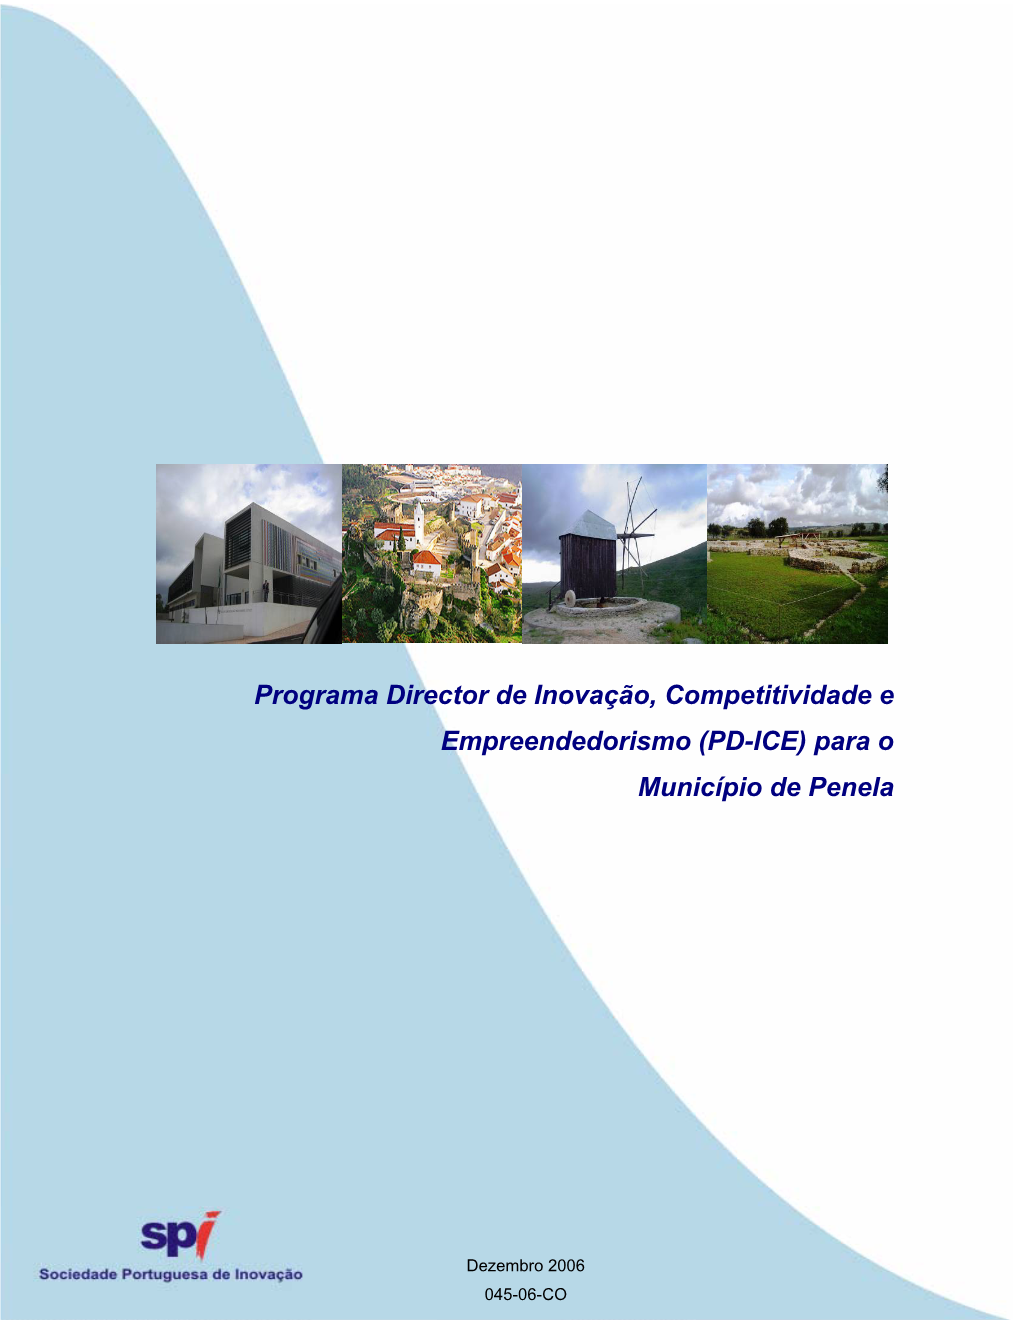 Programa Director De Inovação, Competitividade E Empreendedorismo (PD-ICE) Para O Município De Penela